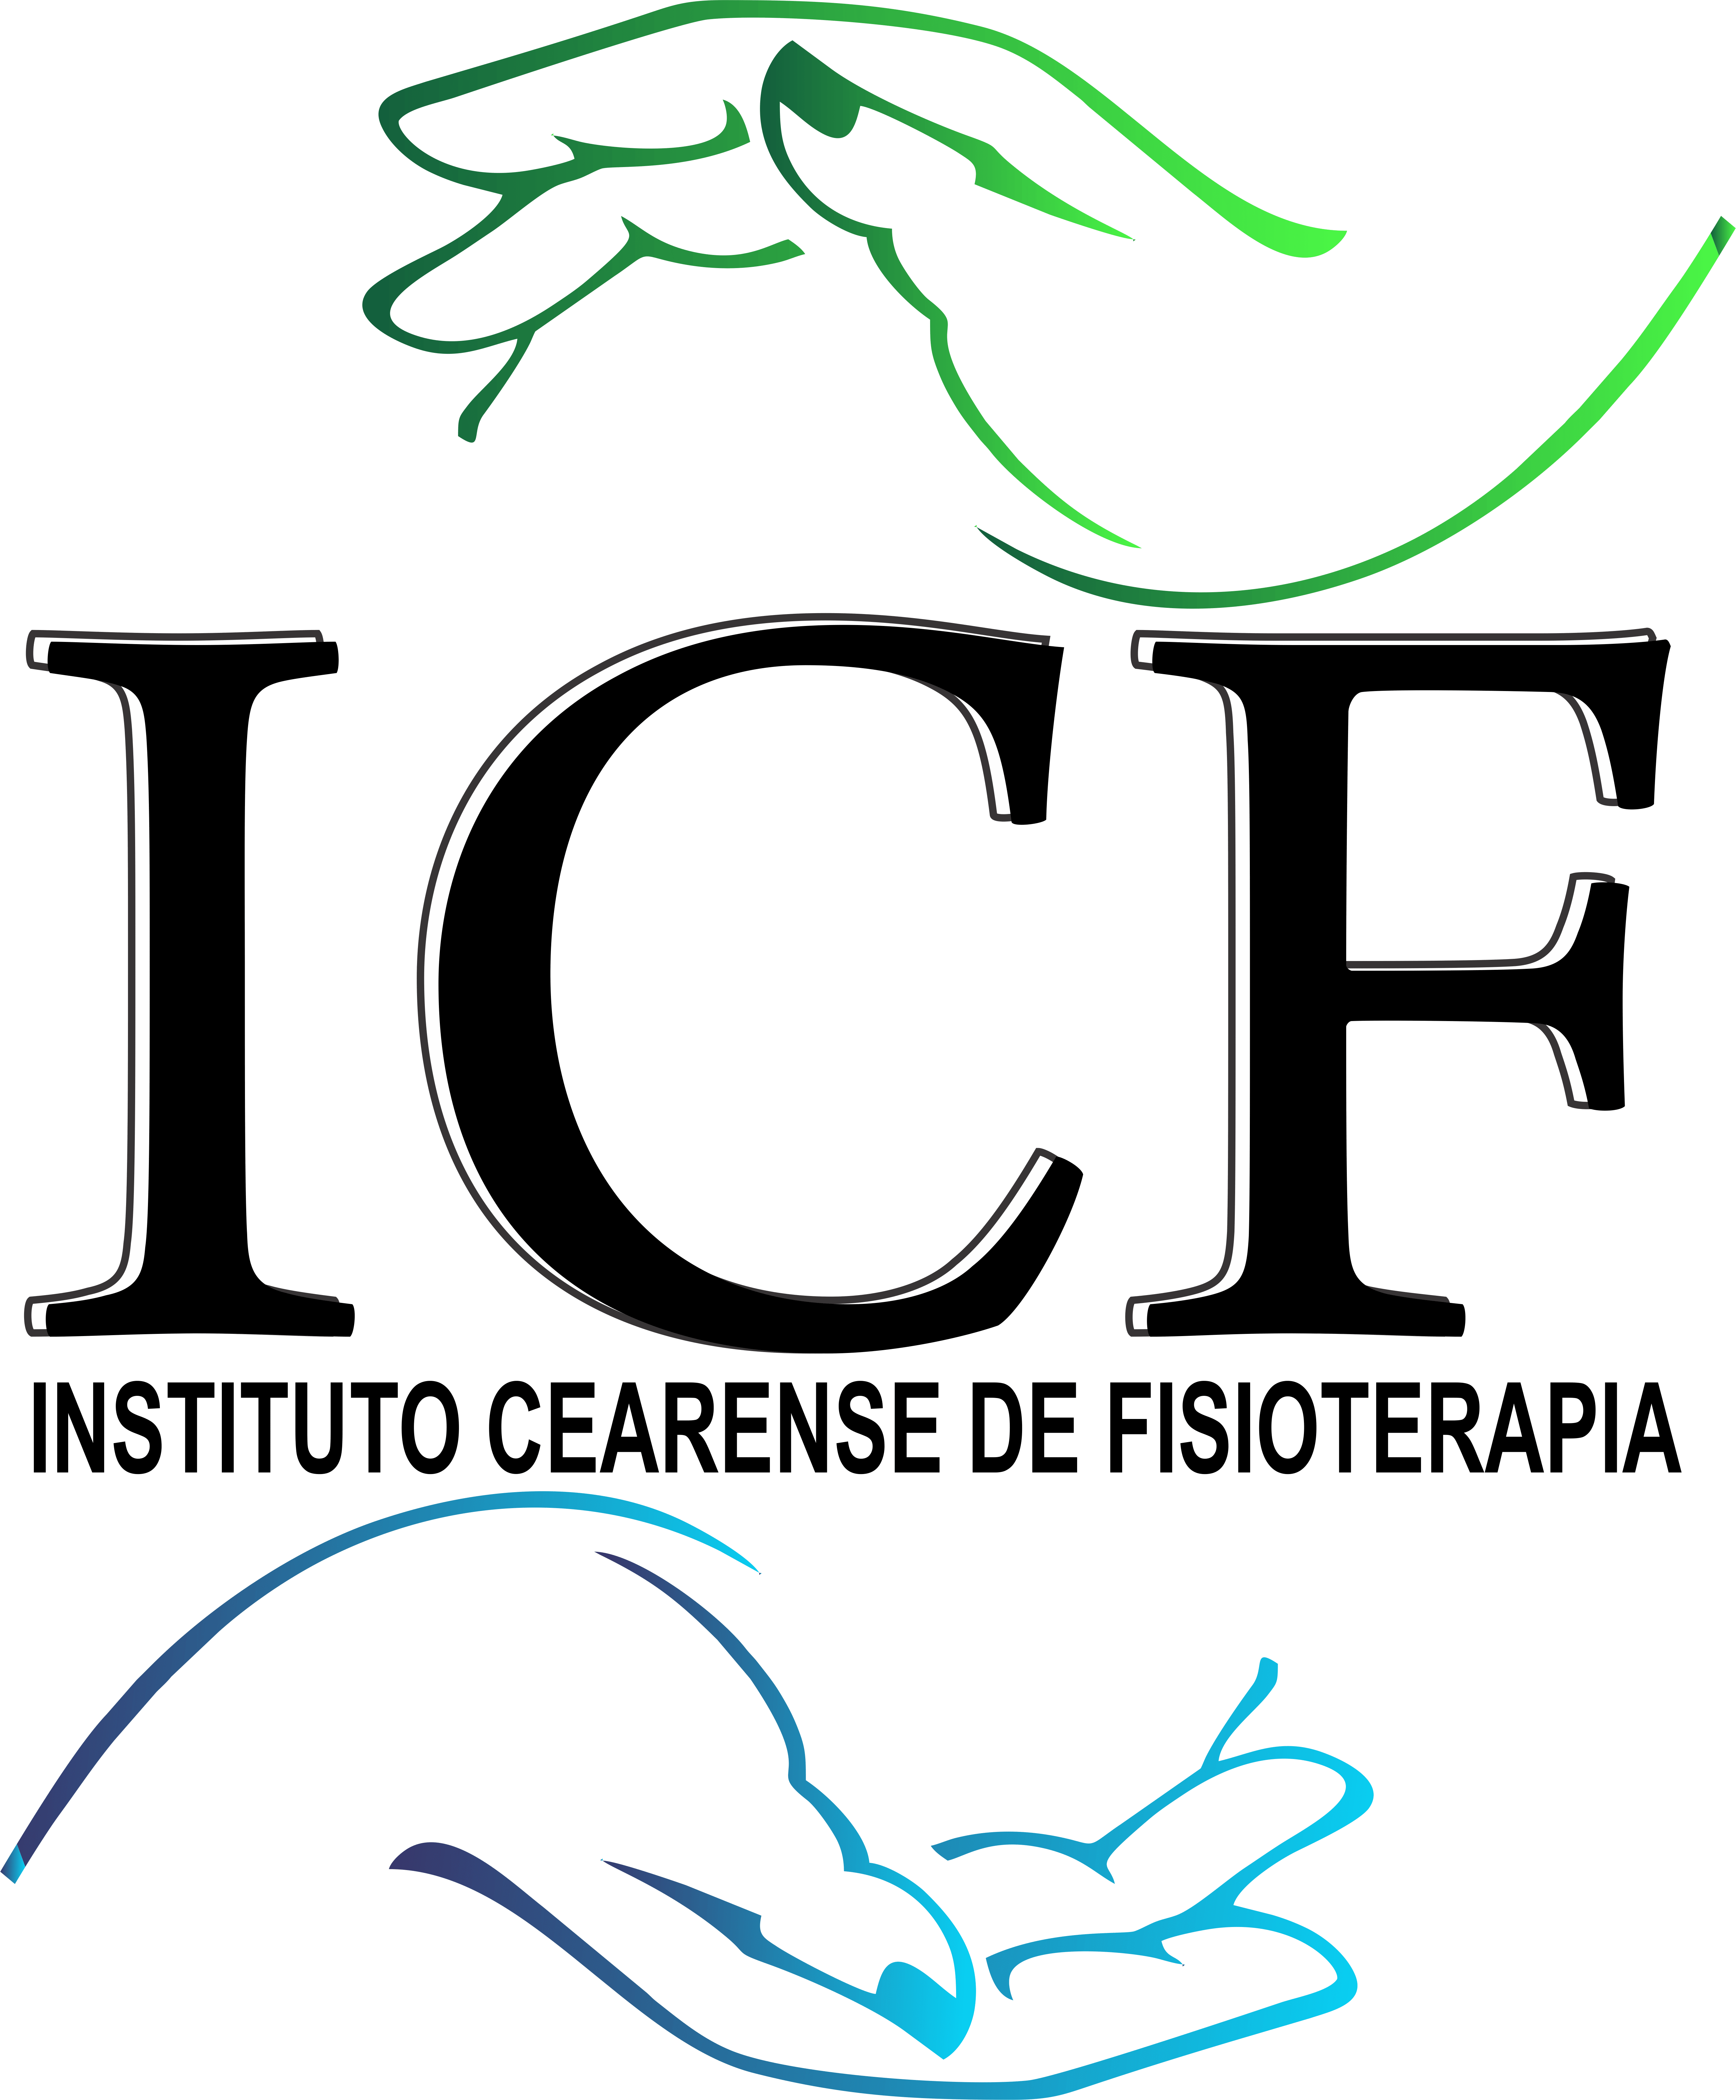 Instituto Cearense de Fisioterapia-ICF